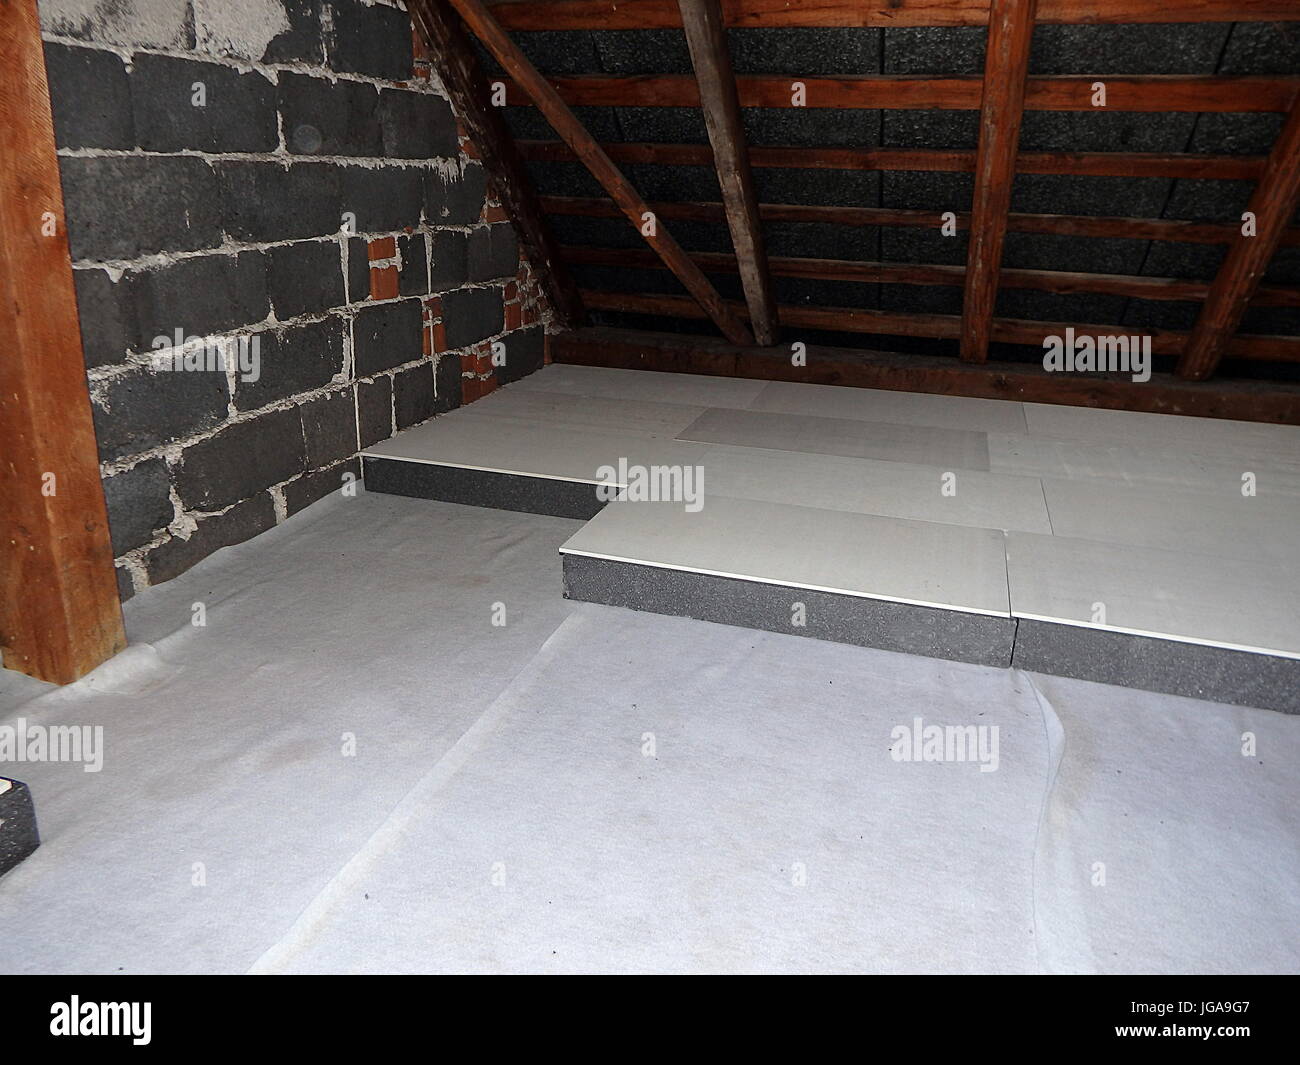 Dämmung des Dachbodens - Polystyrol, Dachgeschoss, Heizung Stockfotografie  - Alamy